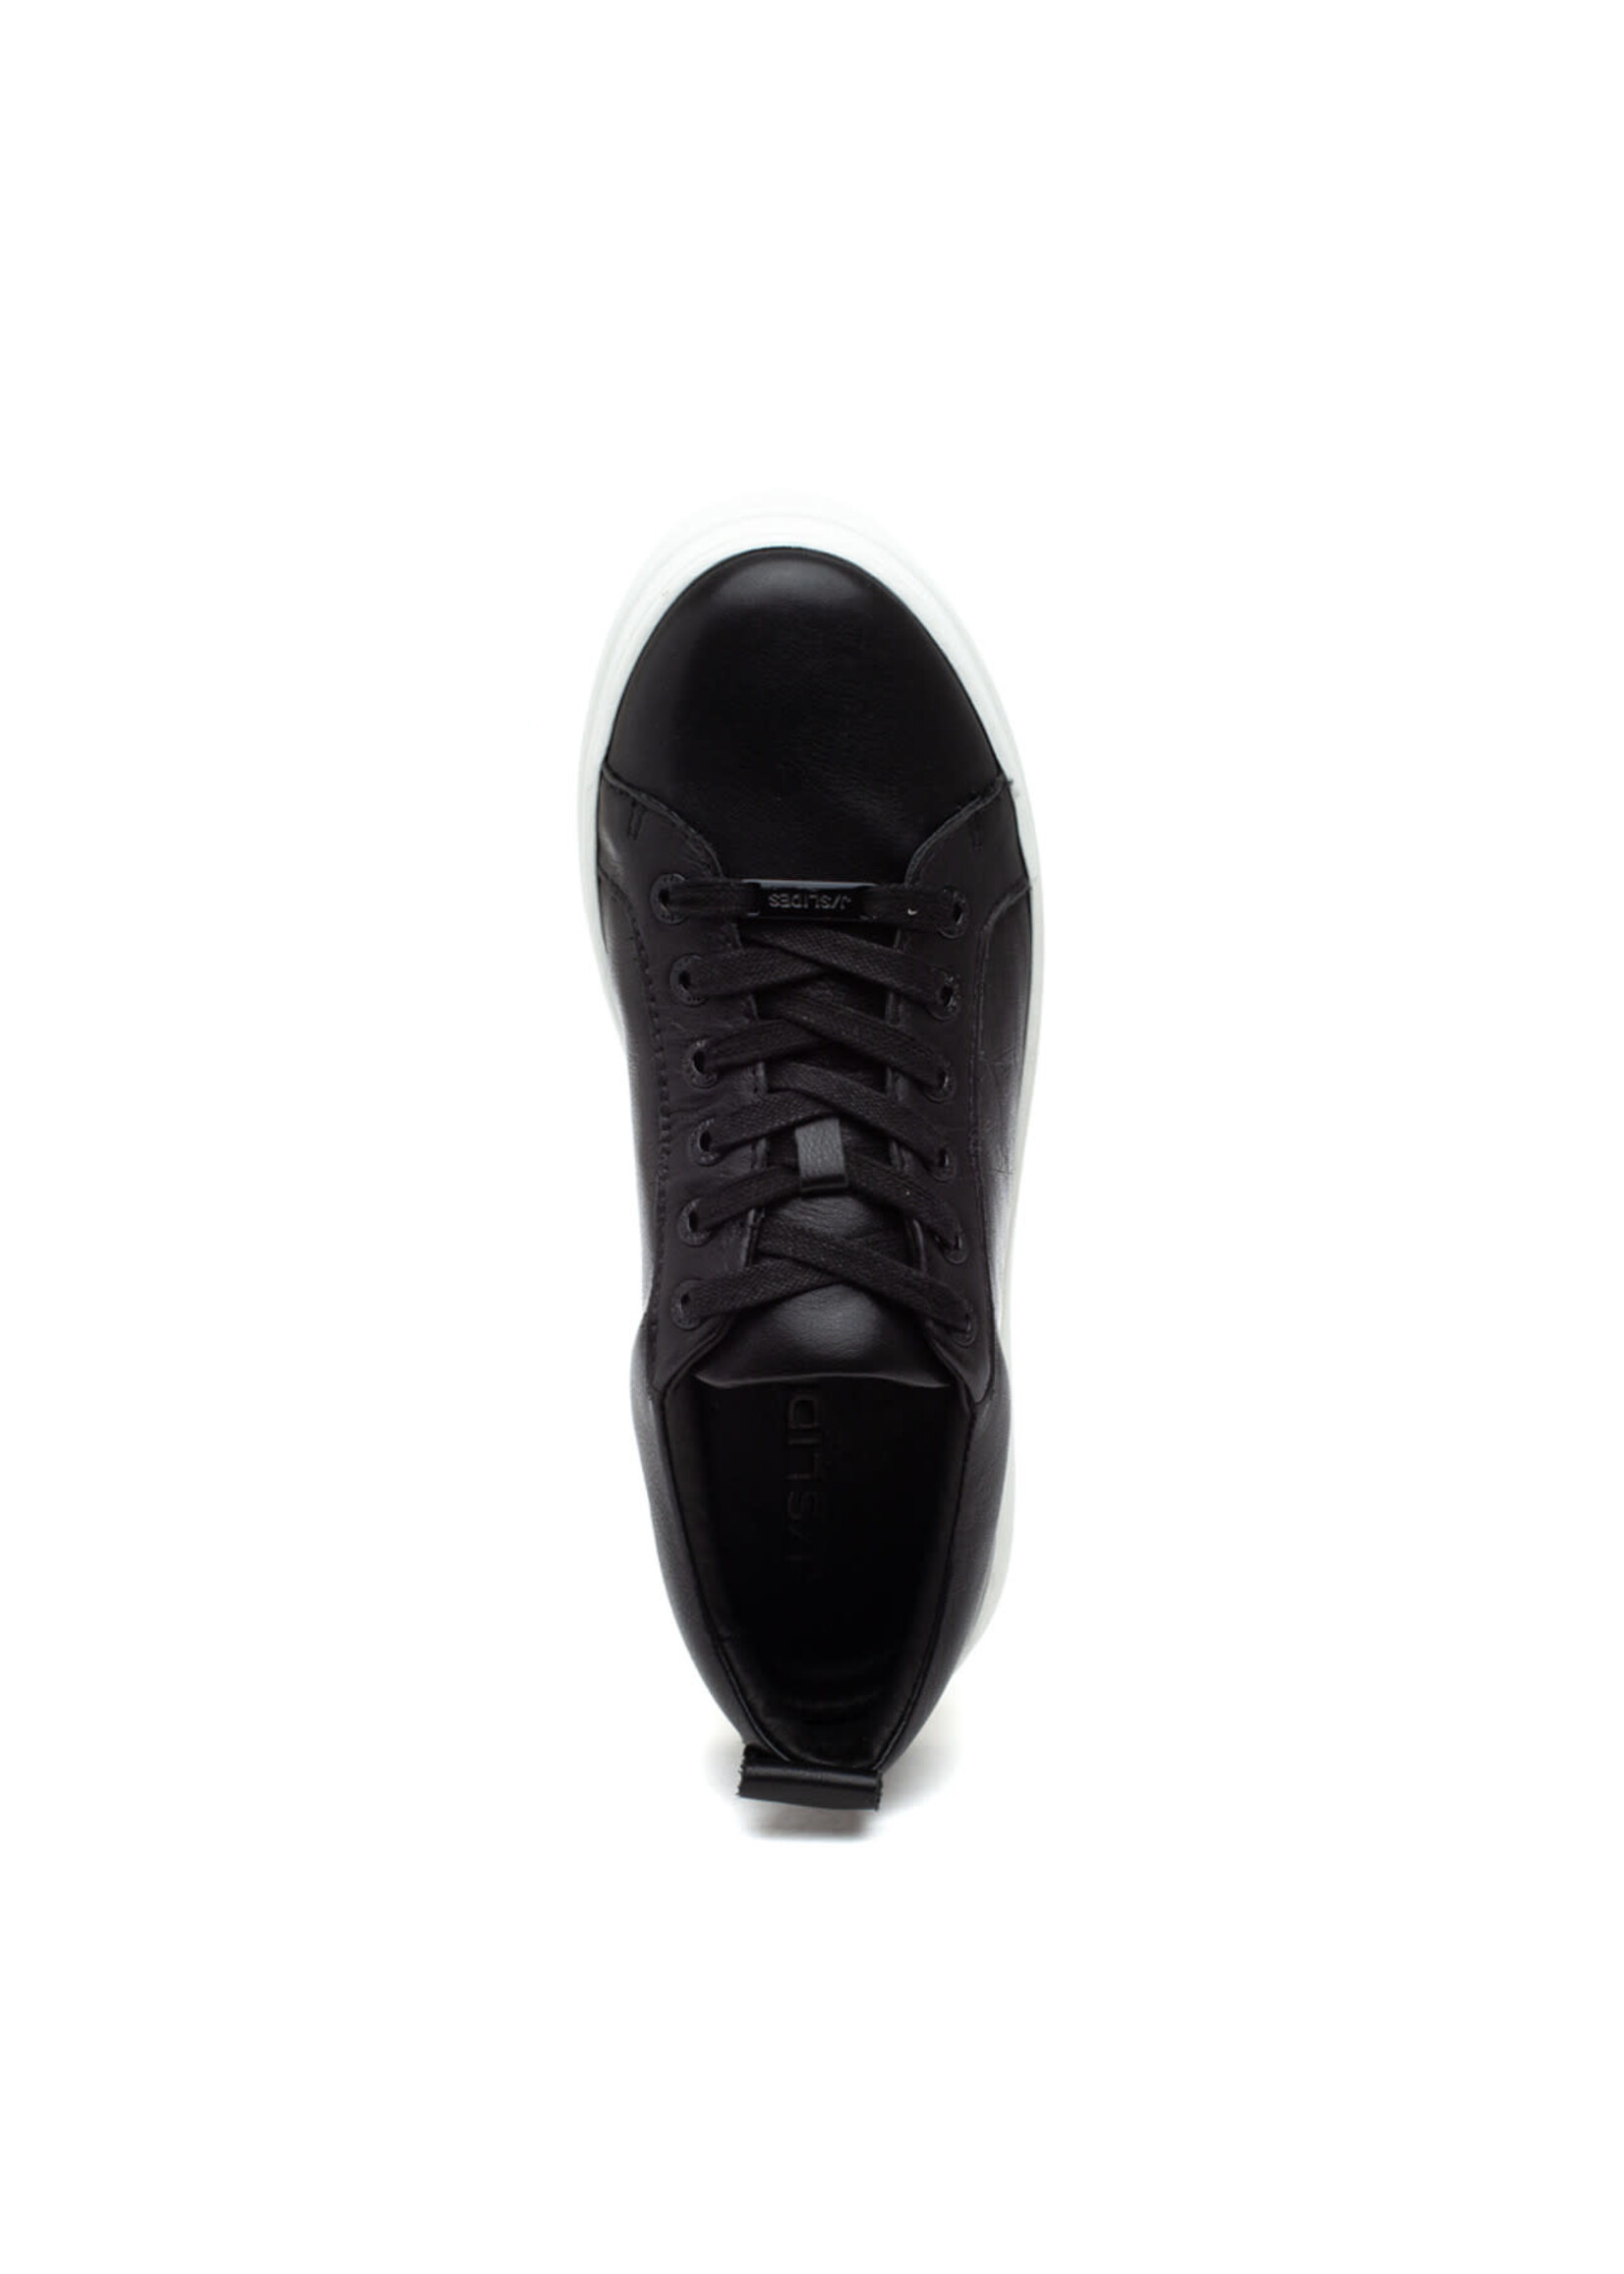 JSlides NYC NOCA Black Leather Sneaker by JSlides NYC